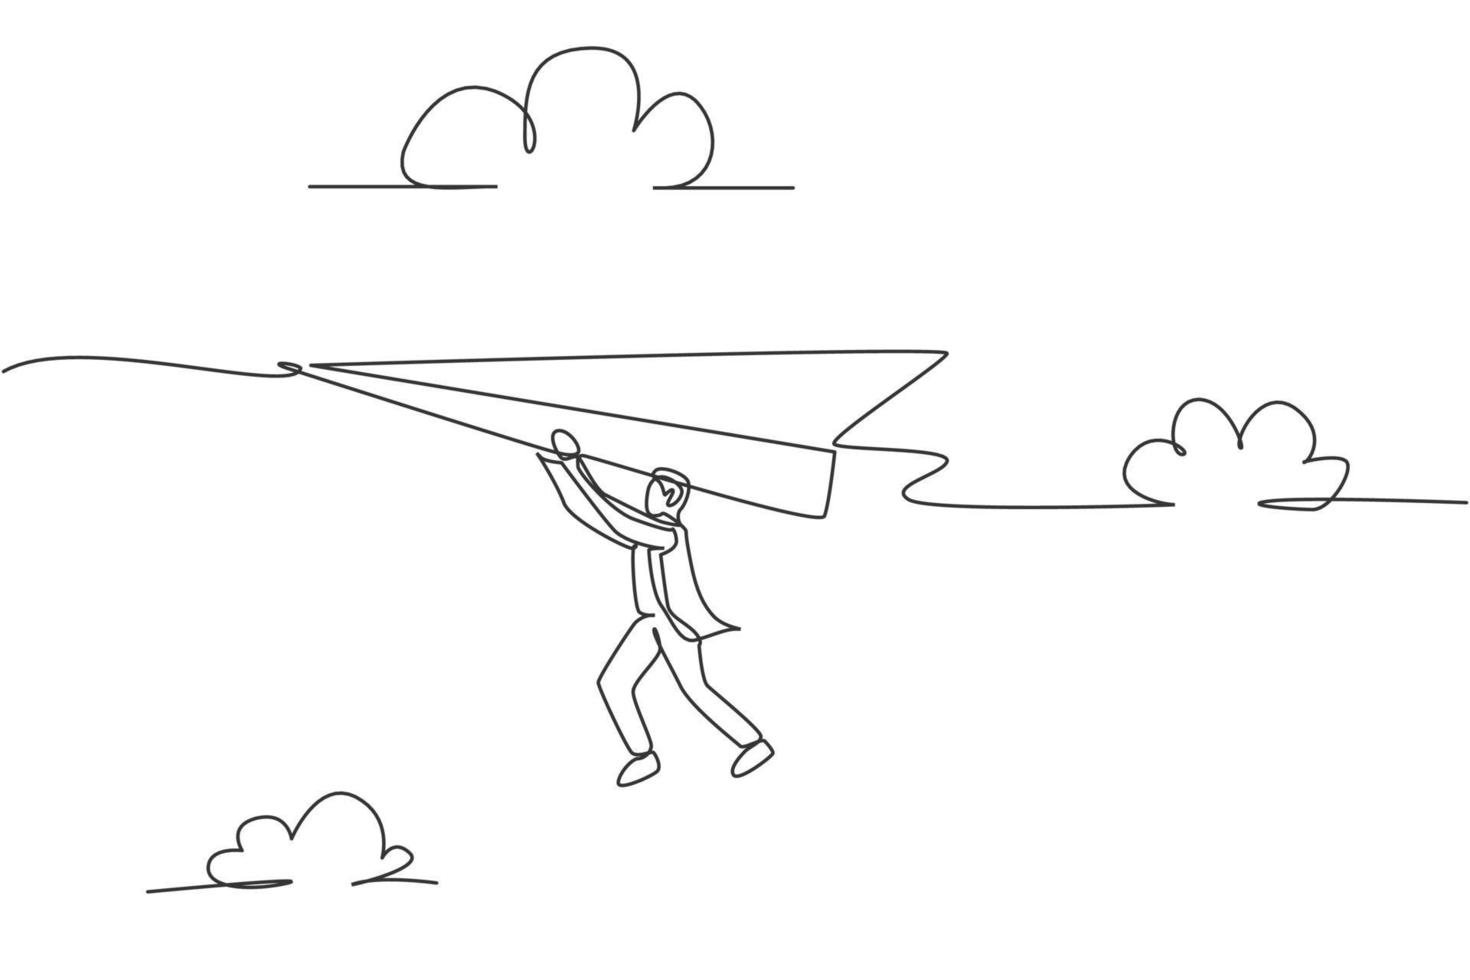 contínua de uma linha de desenho jovem trabalhador segurando um avião de papel voando. conceito minimalista da metáfora do desafio do sucesso do negócio. ilustração do gráfico vetorial moderna de desenho de linha única vetor